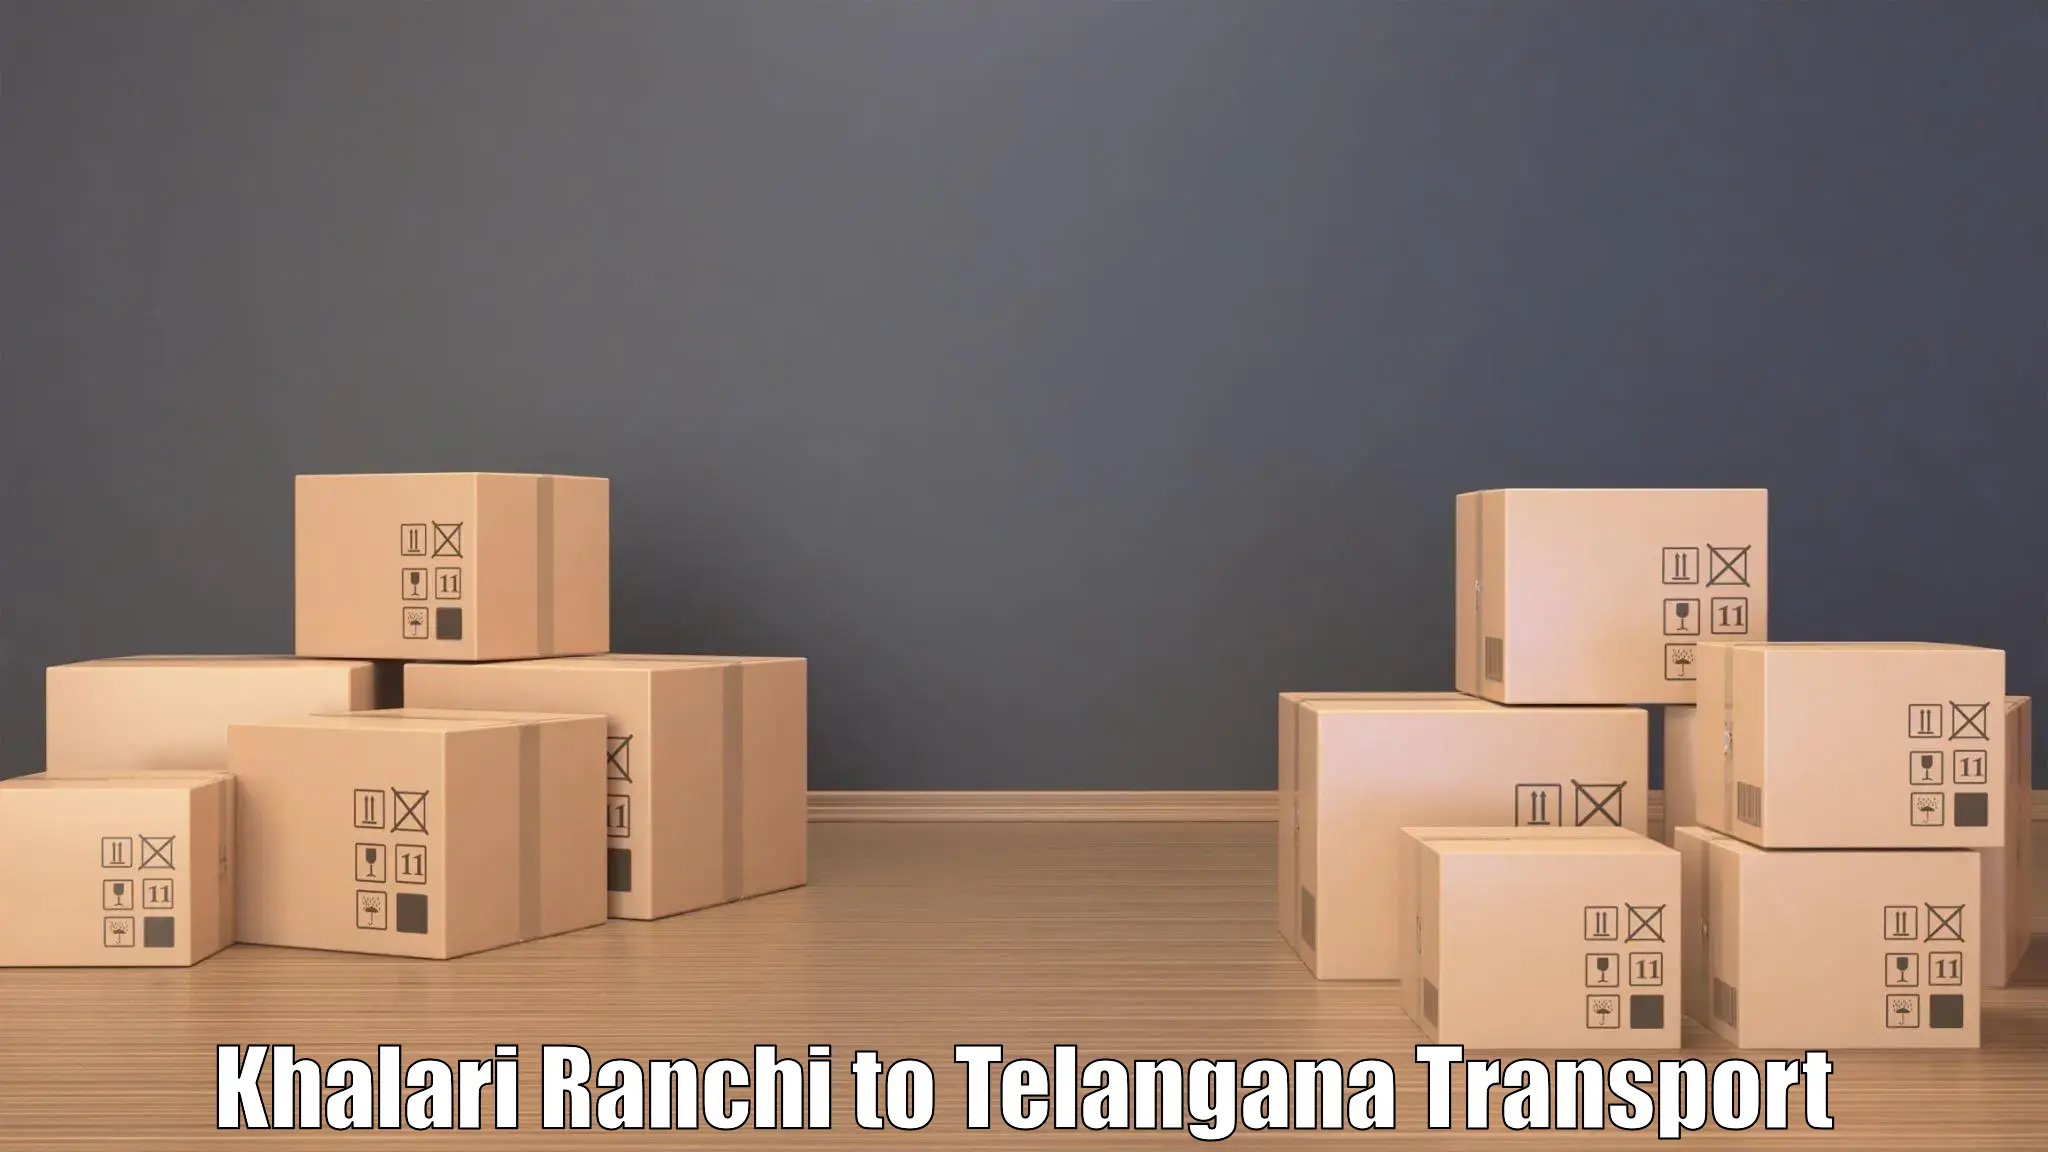 Nationwide transport services Khalari Ranchi to Thungathurthi